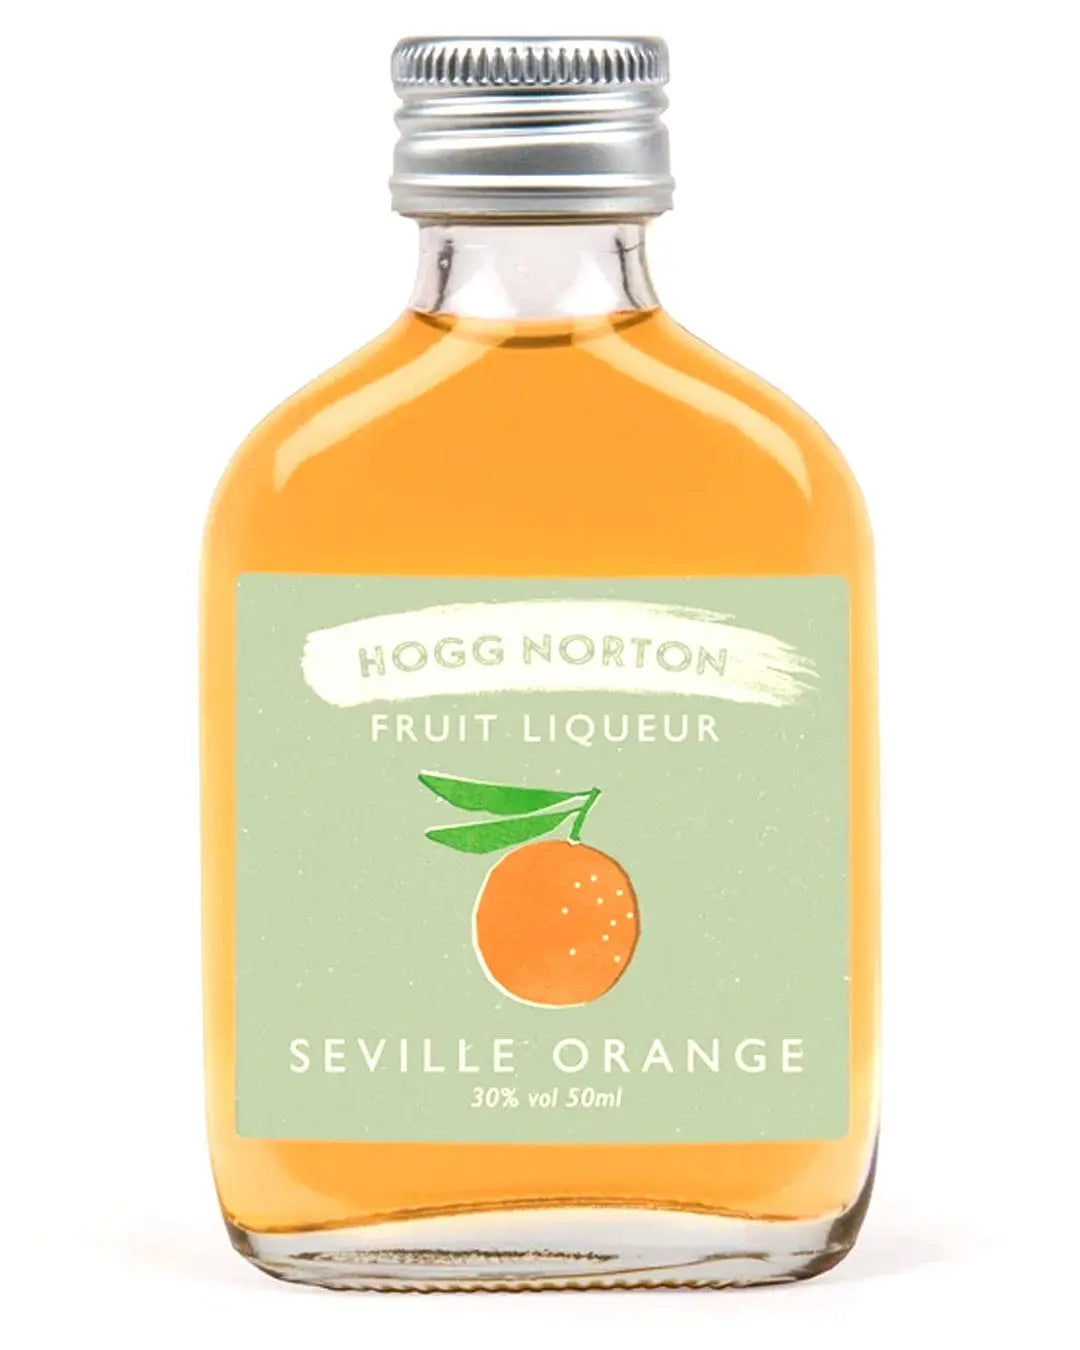 Hogg Norton Seville Orange Fruit Liqueur, 5 cl Spirit Miniatures